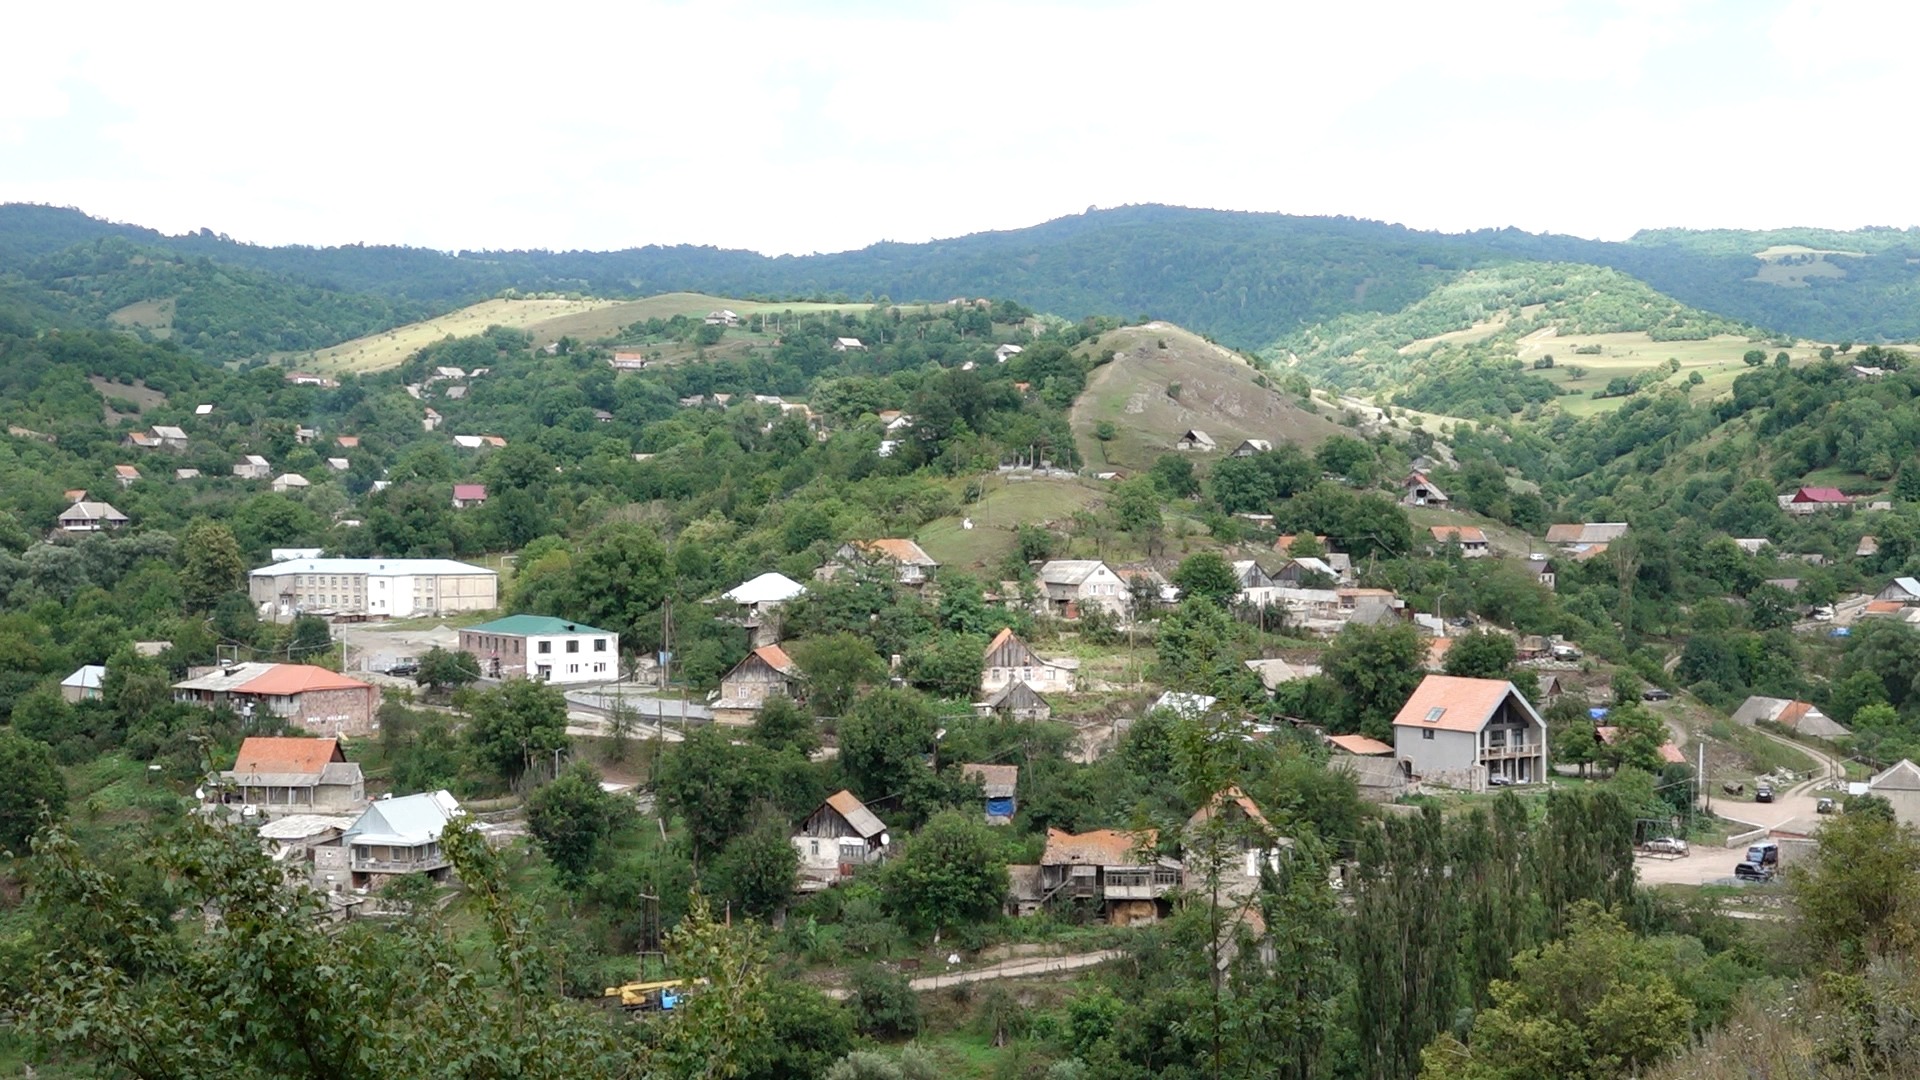 Դեբետը խոստանում է դառնալ Հայաստանի առաջին «խելացի» գյուղը